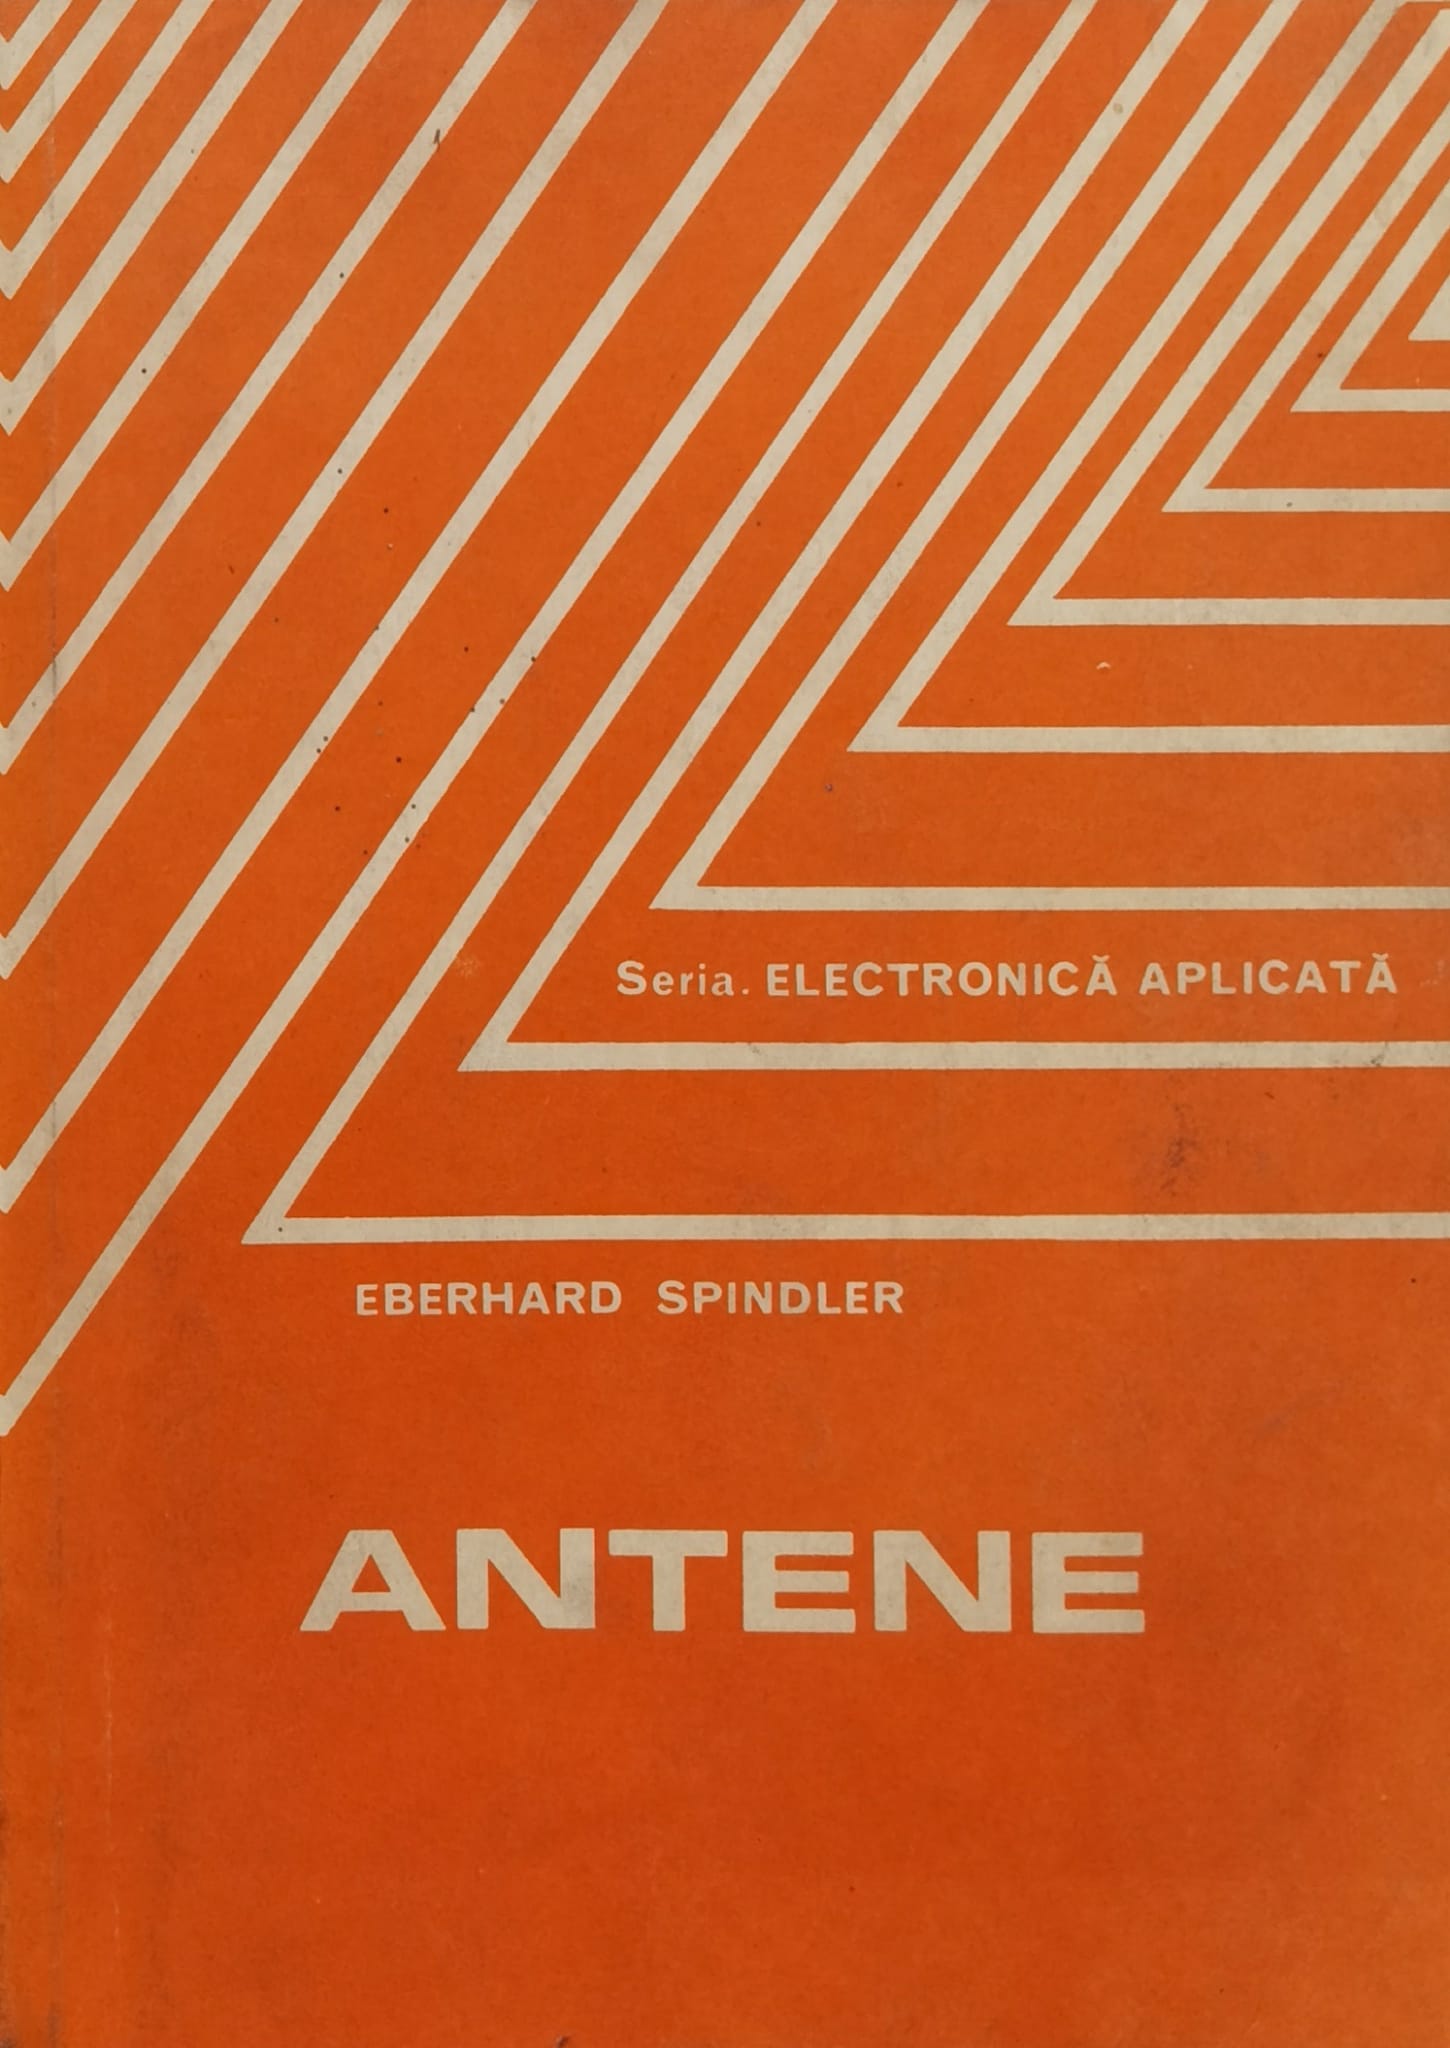 antene                                                                                               eberhard spindler                                                                                   